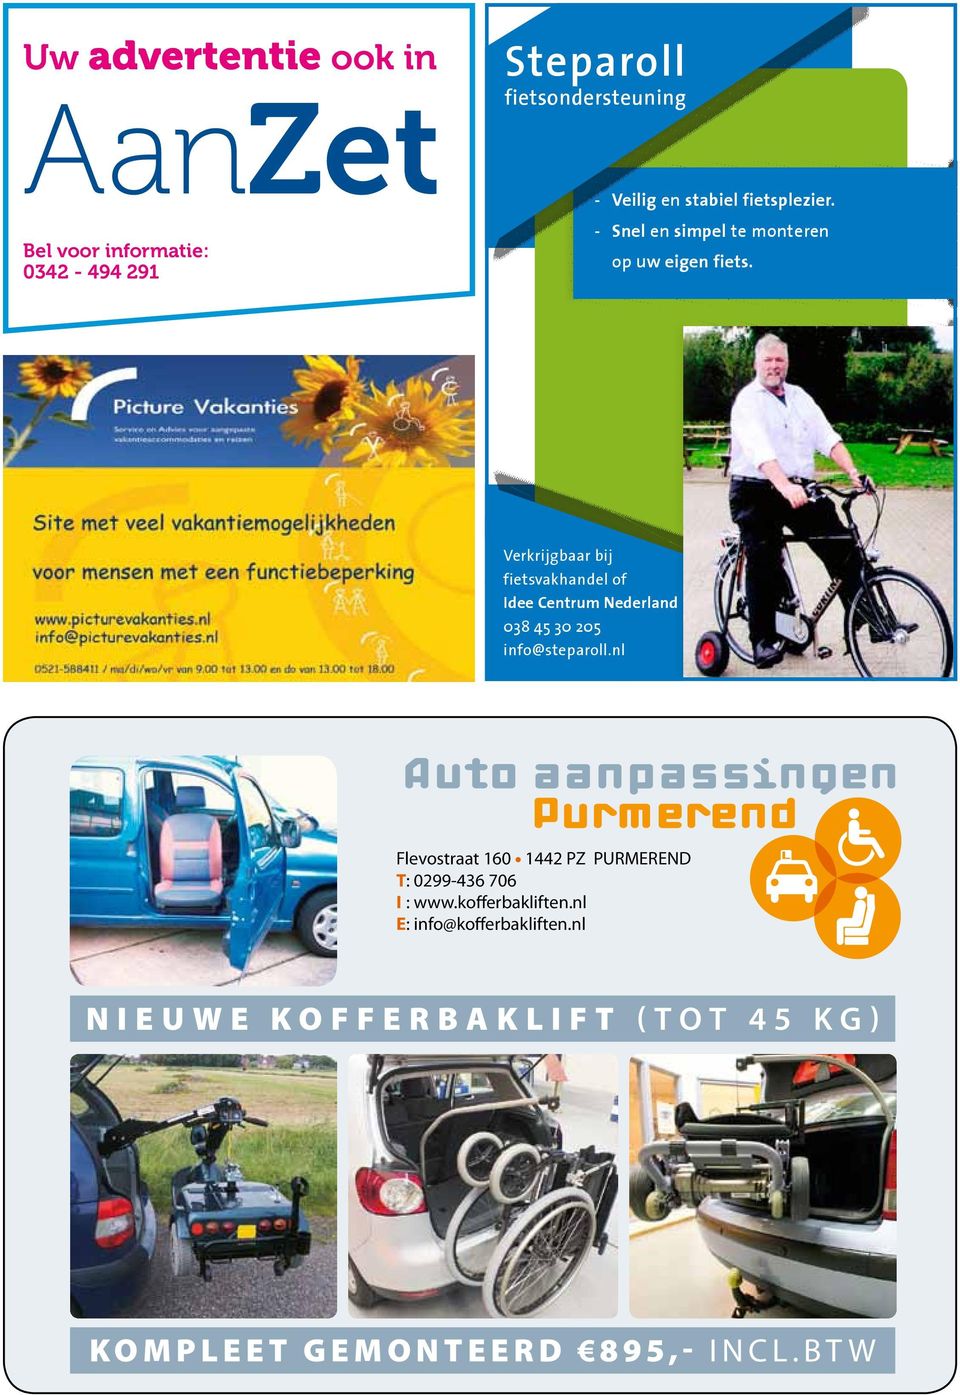 Verkrijgbaar bij fietsvakhandel of Idee Centrum Nederland 038 45 30 205 info@steparoll.